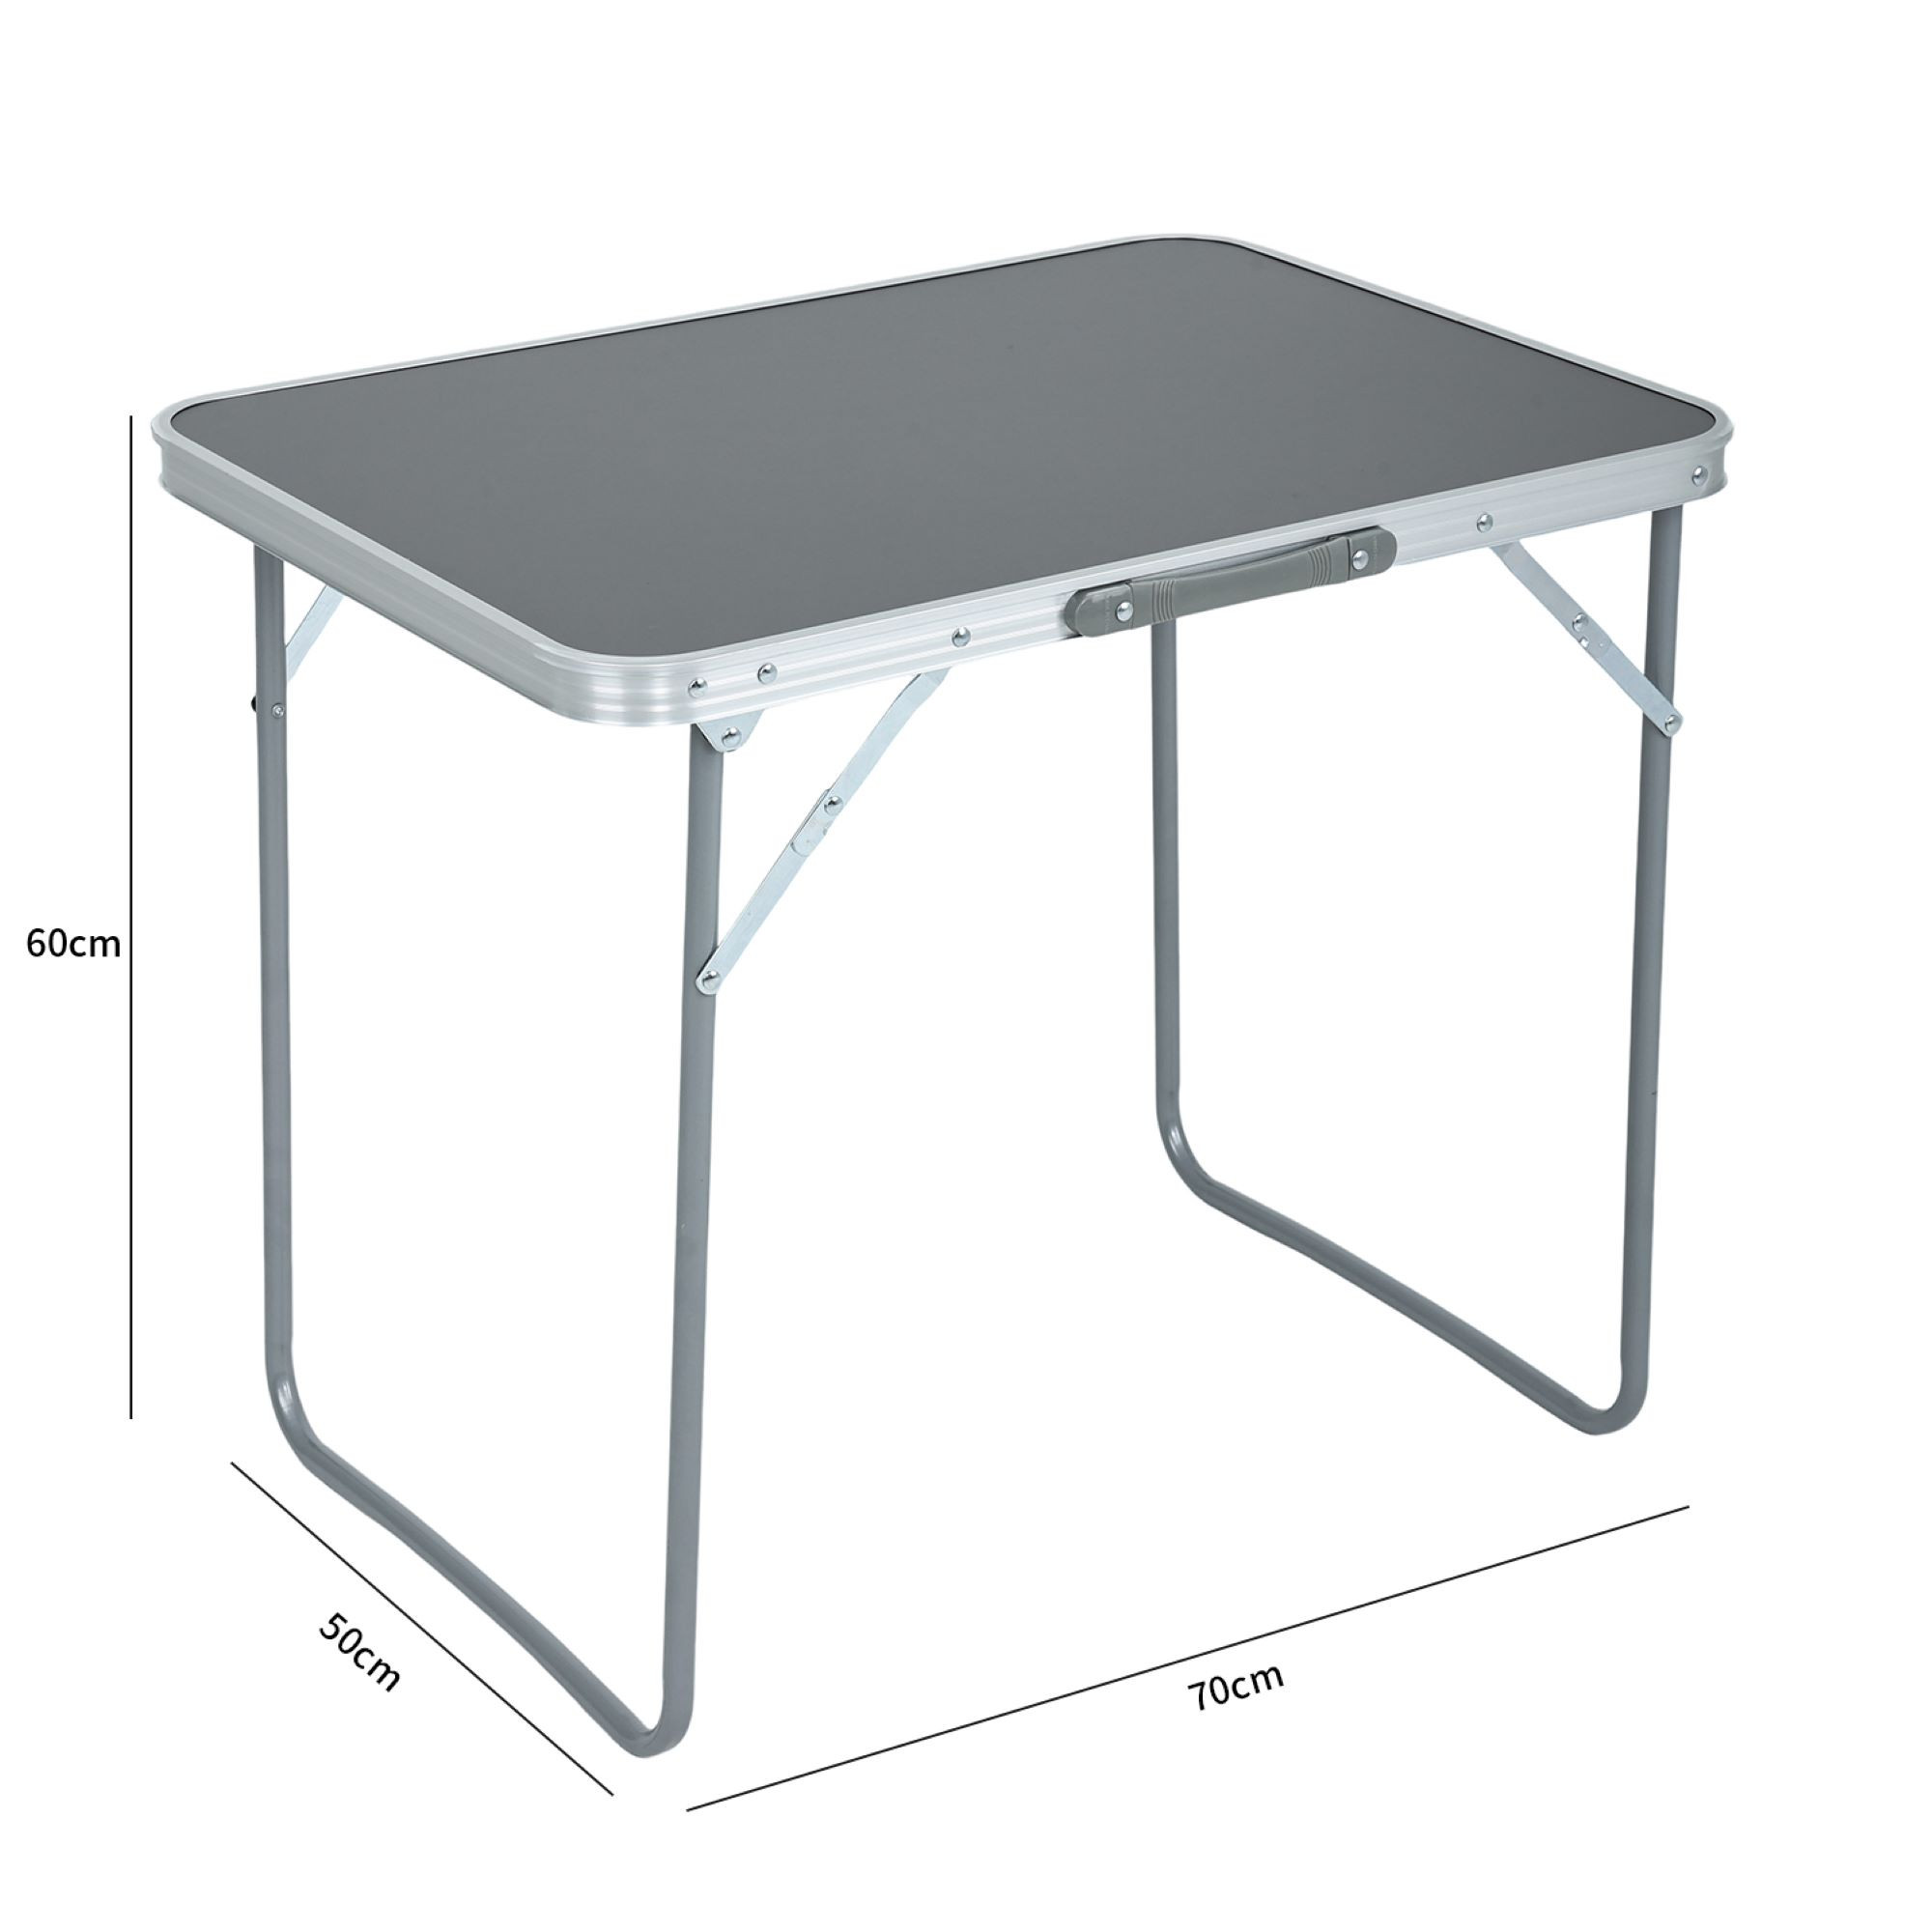 Wymiary 3D - Składany stolik kempingowy ARES z szarego aluminium wymiary 70x60x50 cm - AKORD Fabryka Mebli